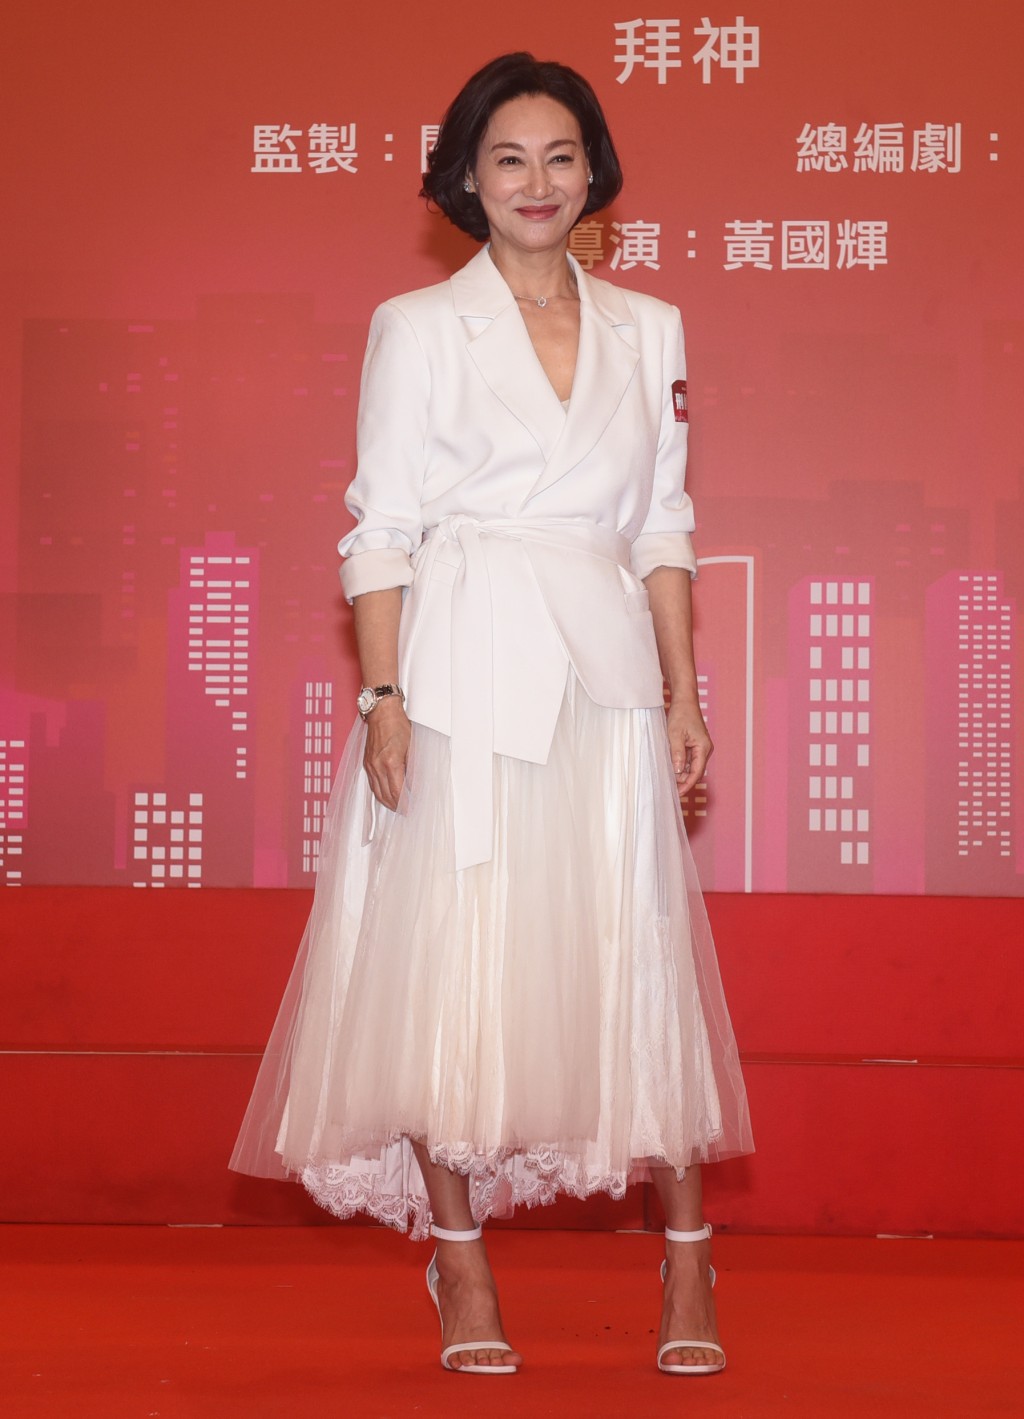 64歲的惠英紅在影視界都獲獎無數。